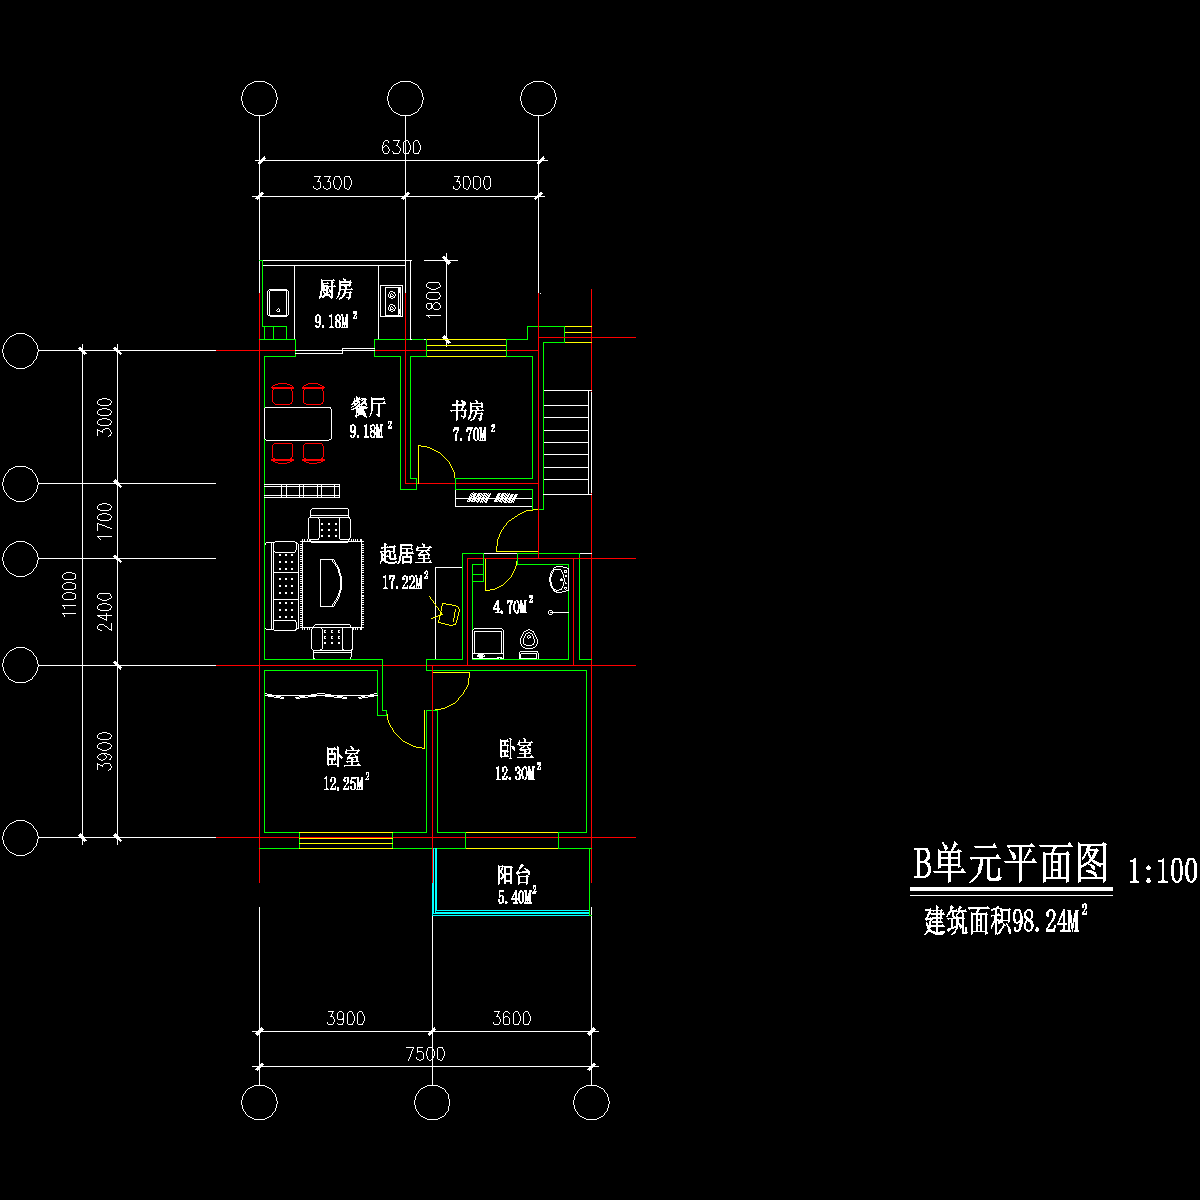 板式多层三室单户户型CAD图纸(127)